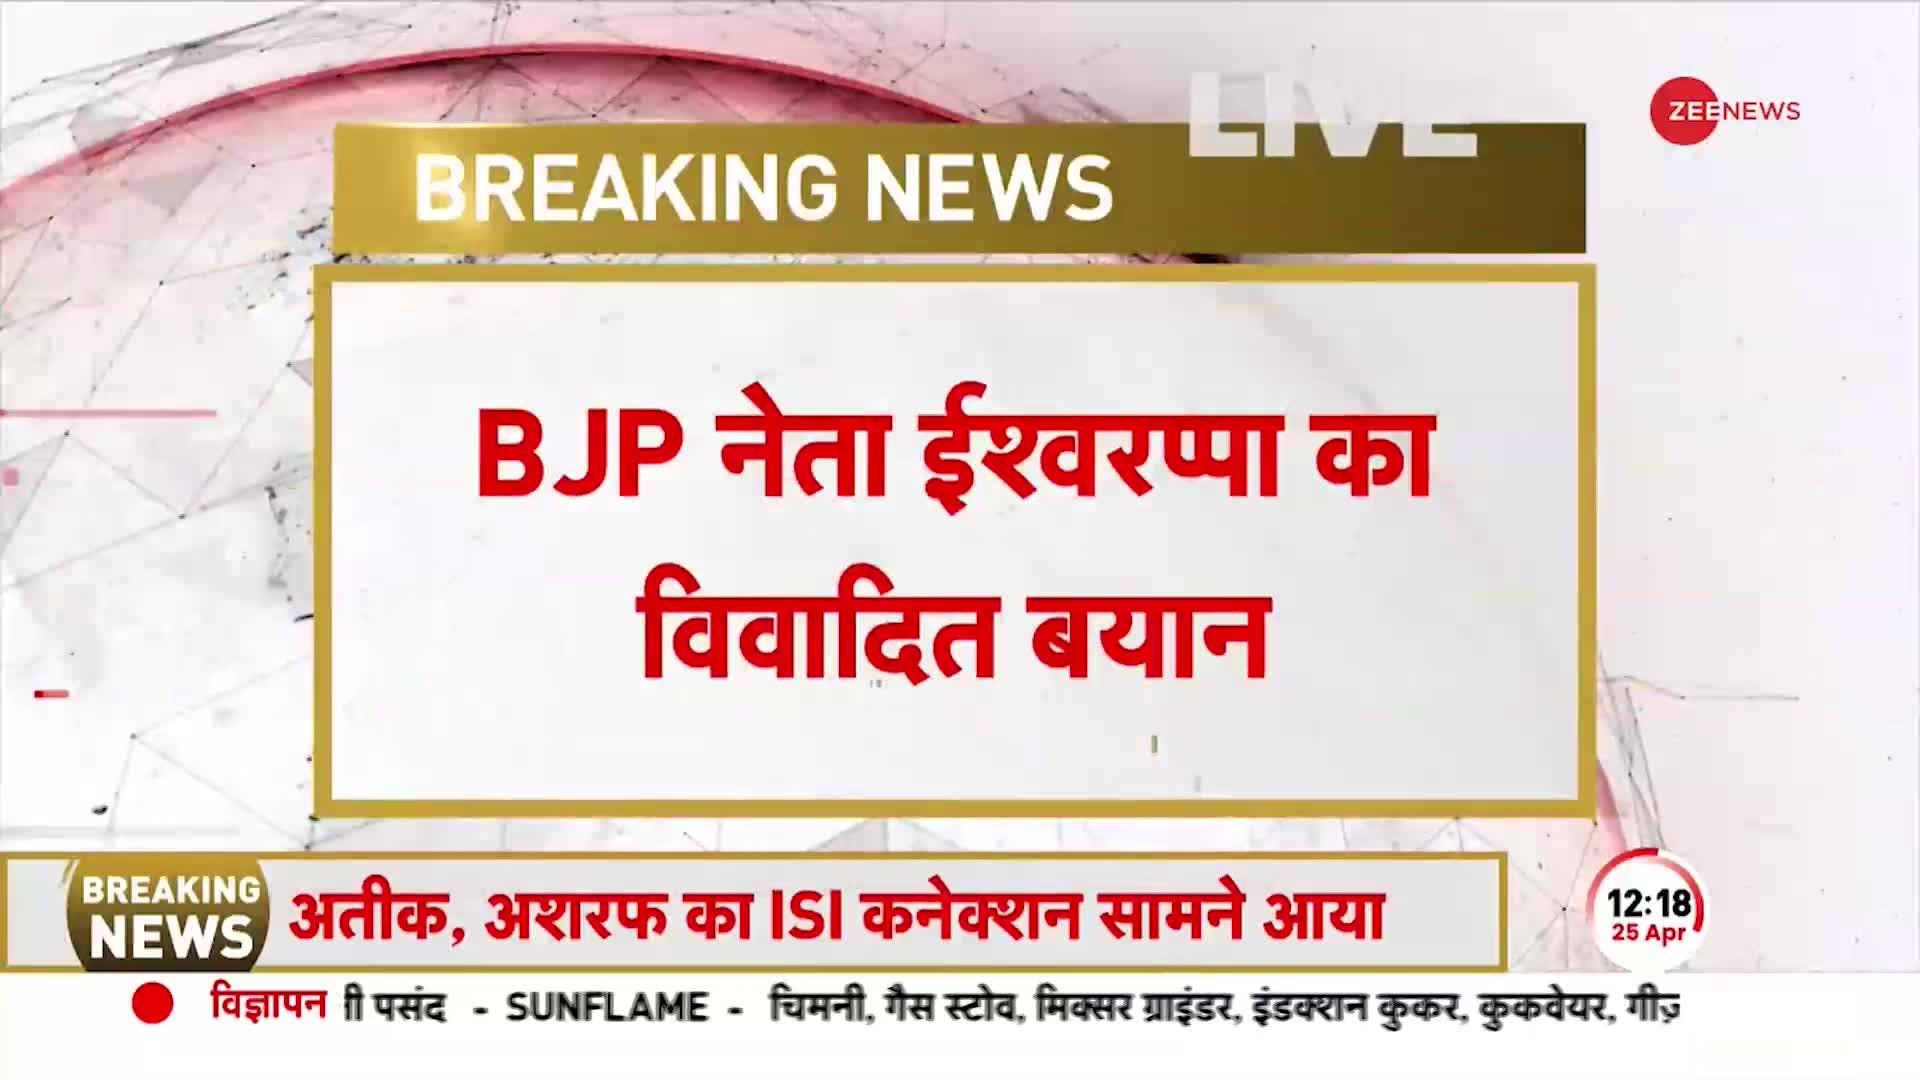 पूर्व मंत्री और BJP नेता KS Eshwarappa ने दिया विवादित बयान, 'बीजेपी को मुस्लिम वोट की ज़रूरत नहीं'